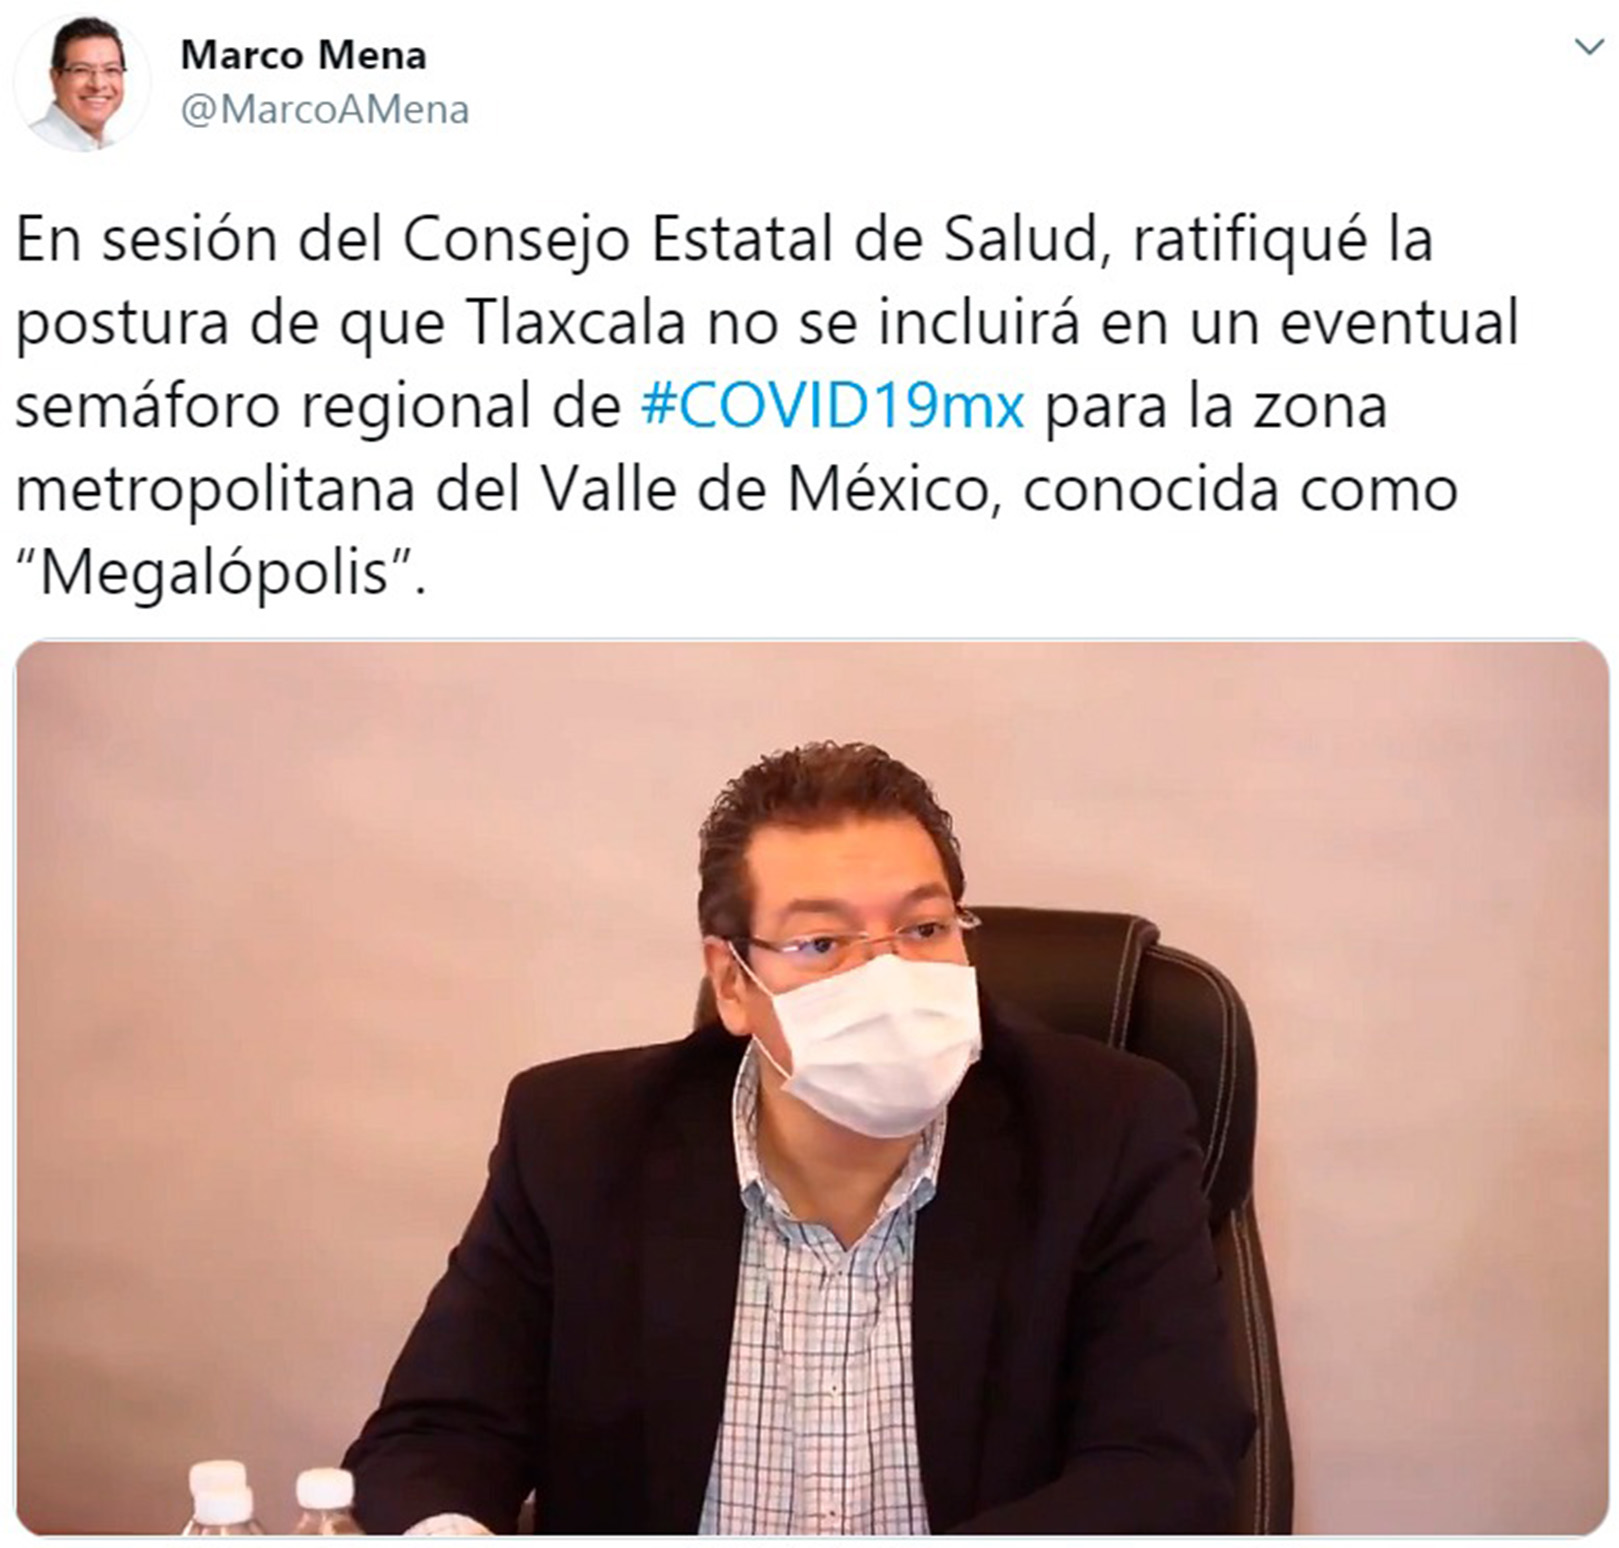 Marco Mena ratifica que Tlaxcala no se incluye en semáforo regional de COVID-19 de la “Megalópolis”